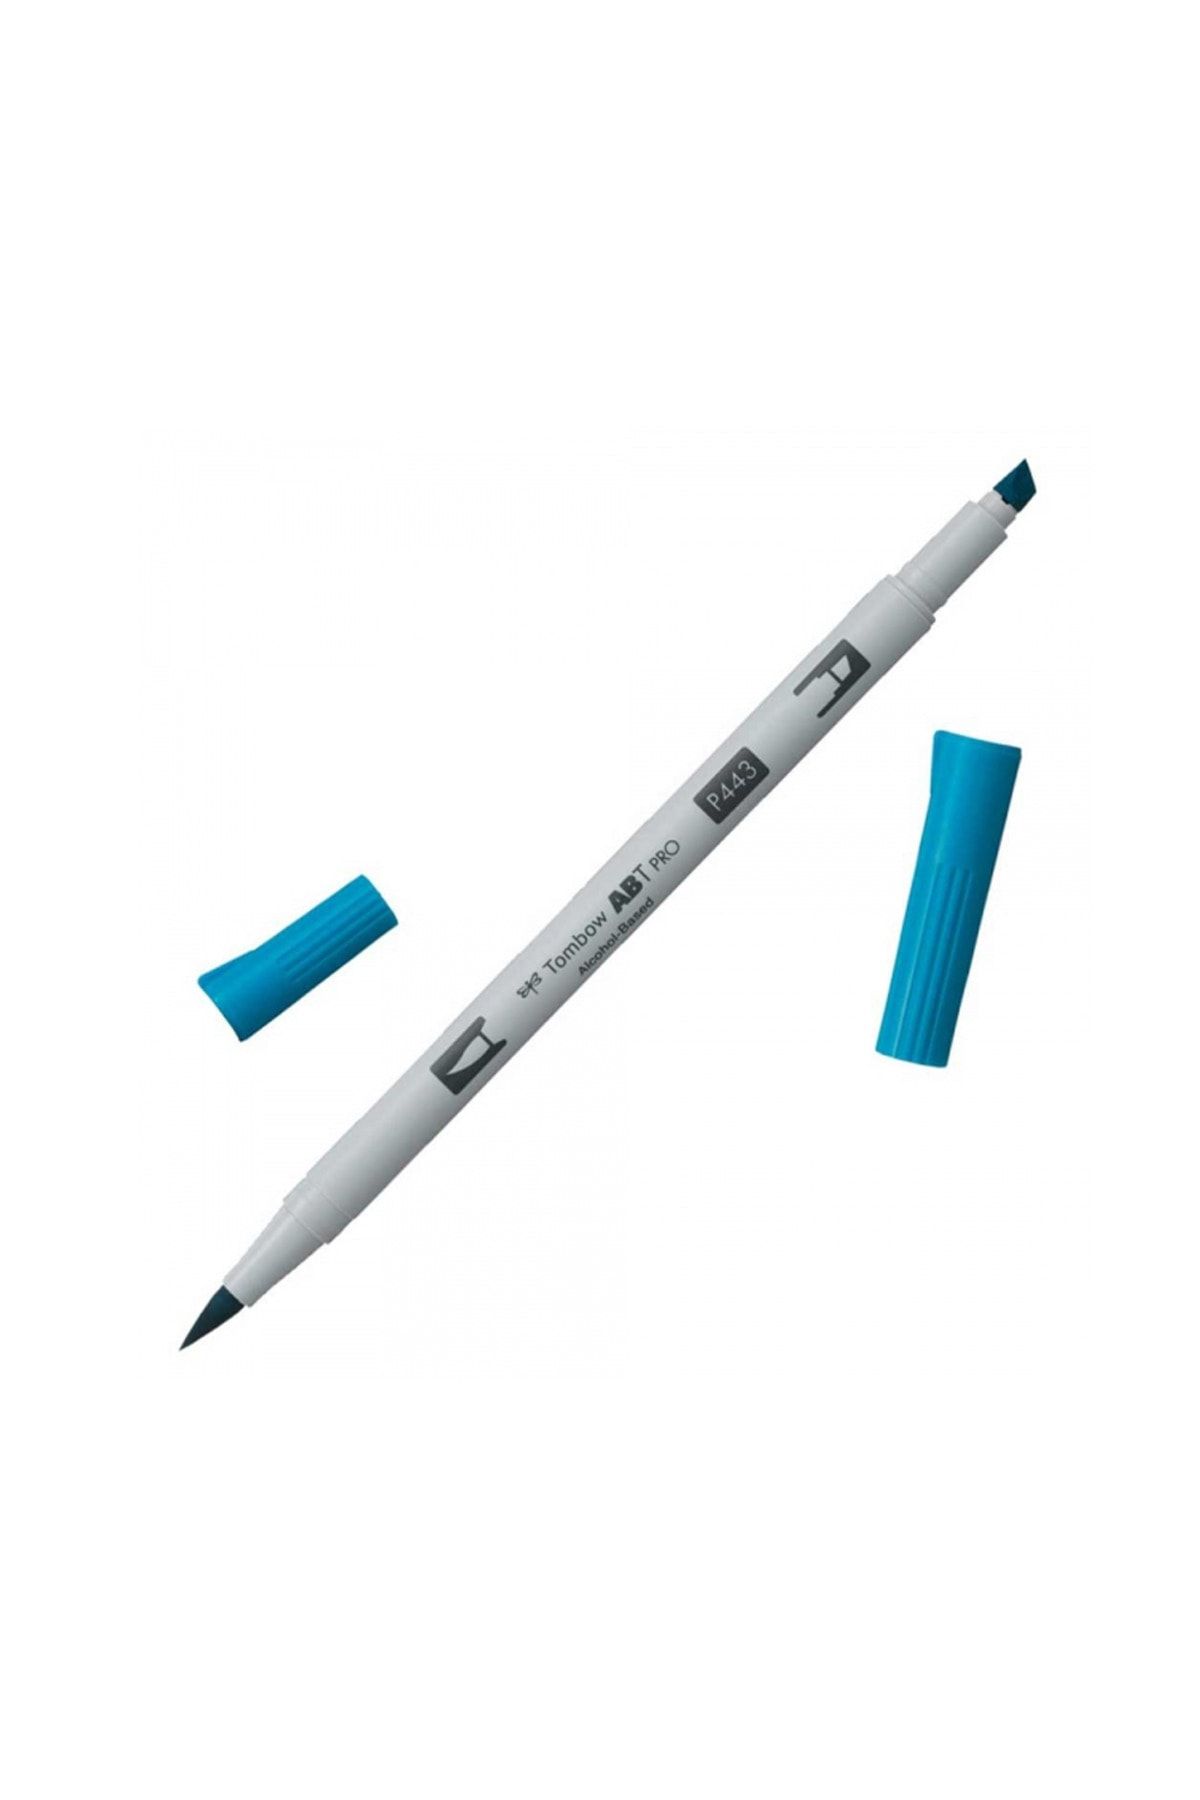 Tombow AB-TP PRO Dual Brush Pen Grafik Kalemi Turquoise 443